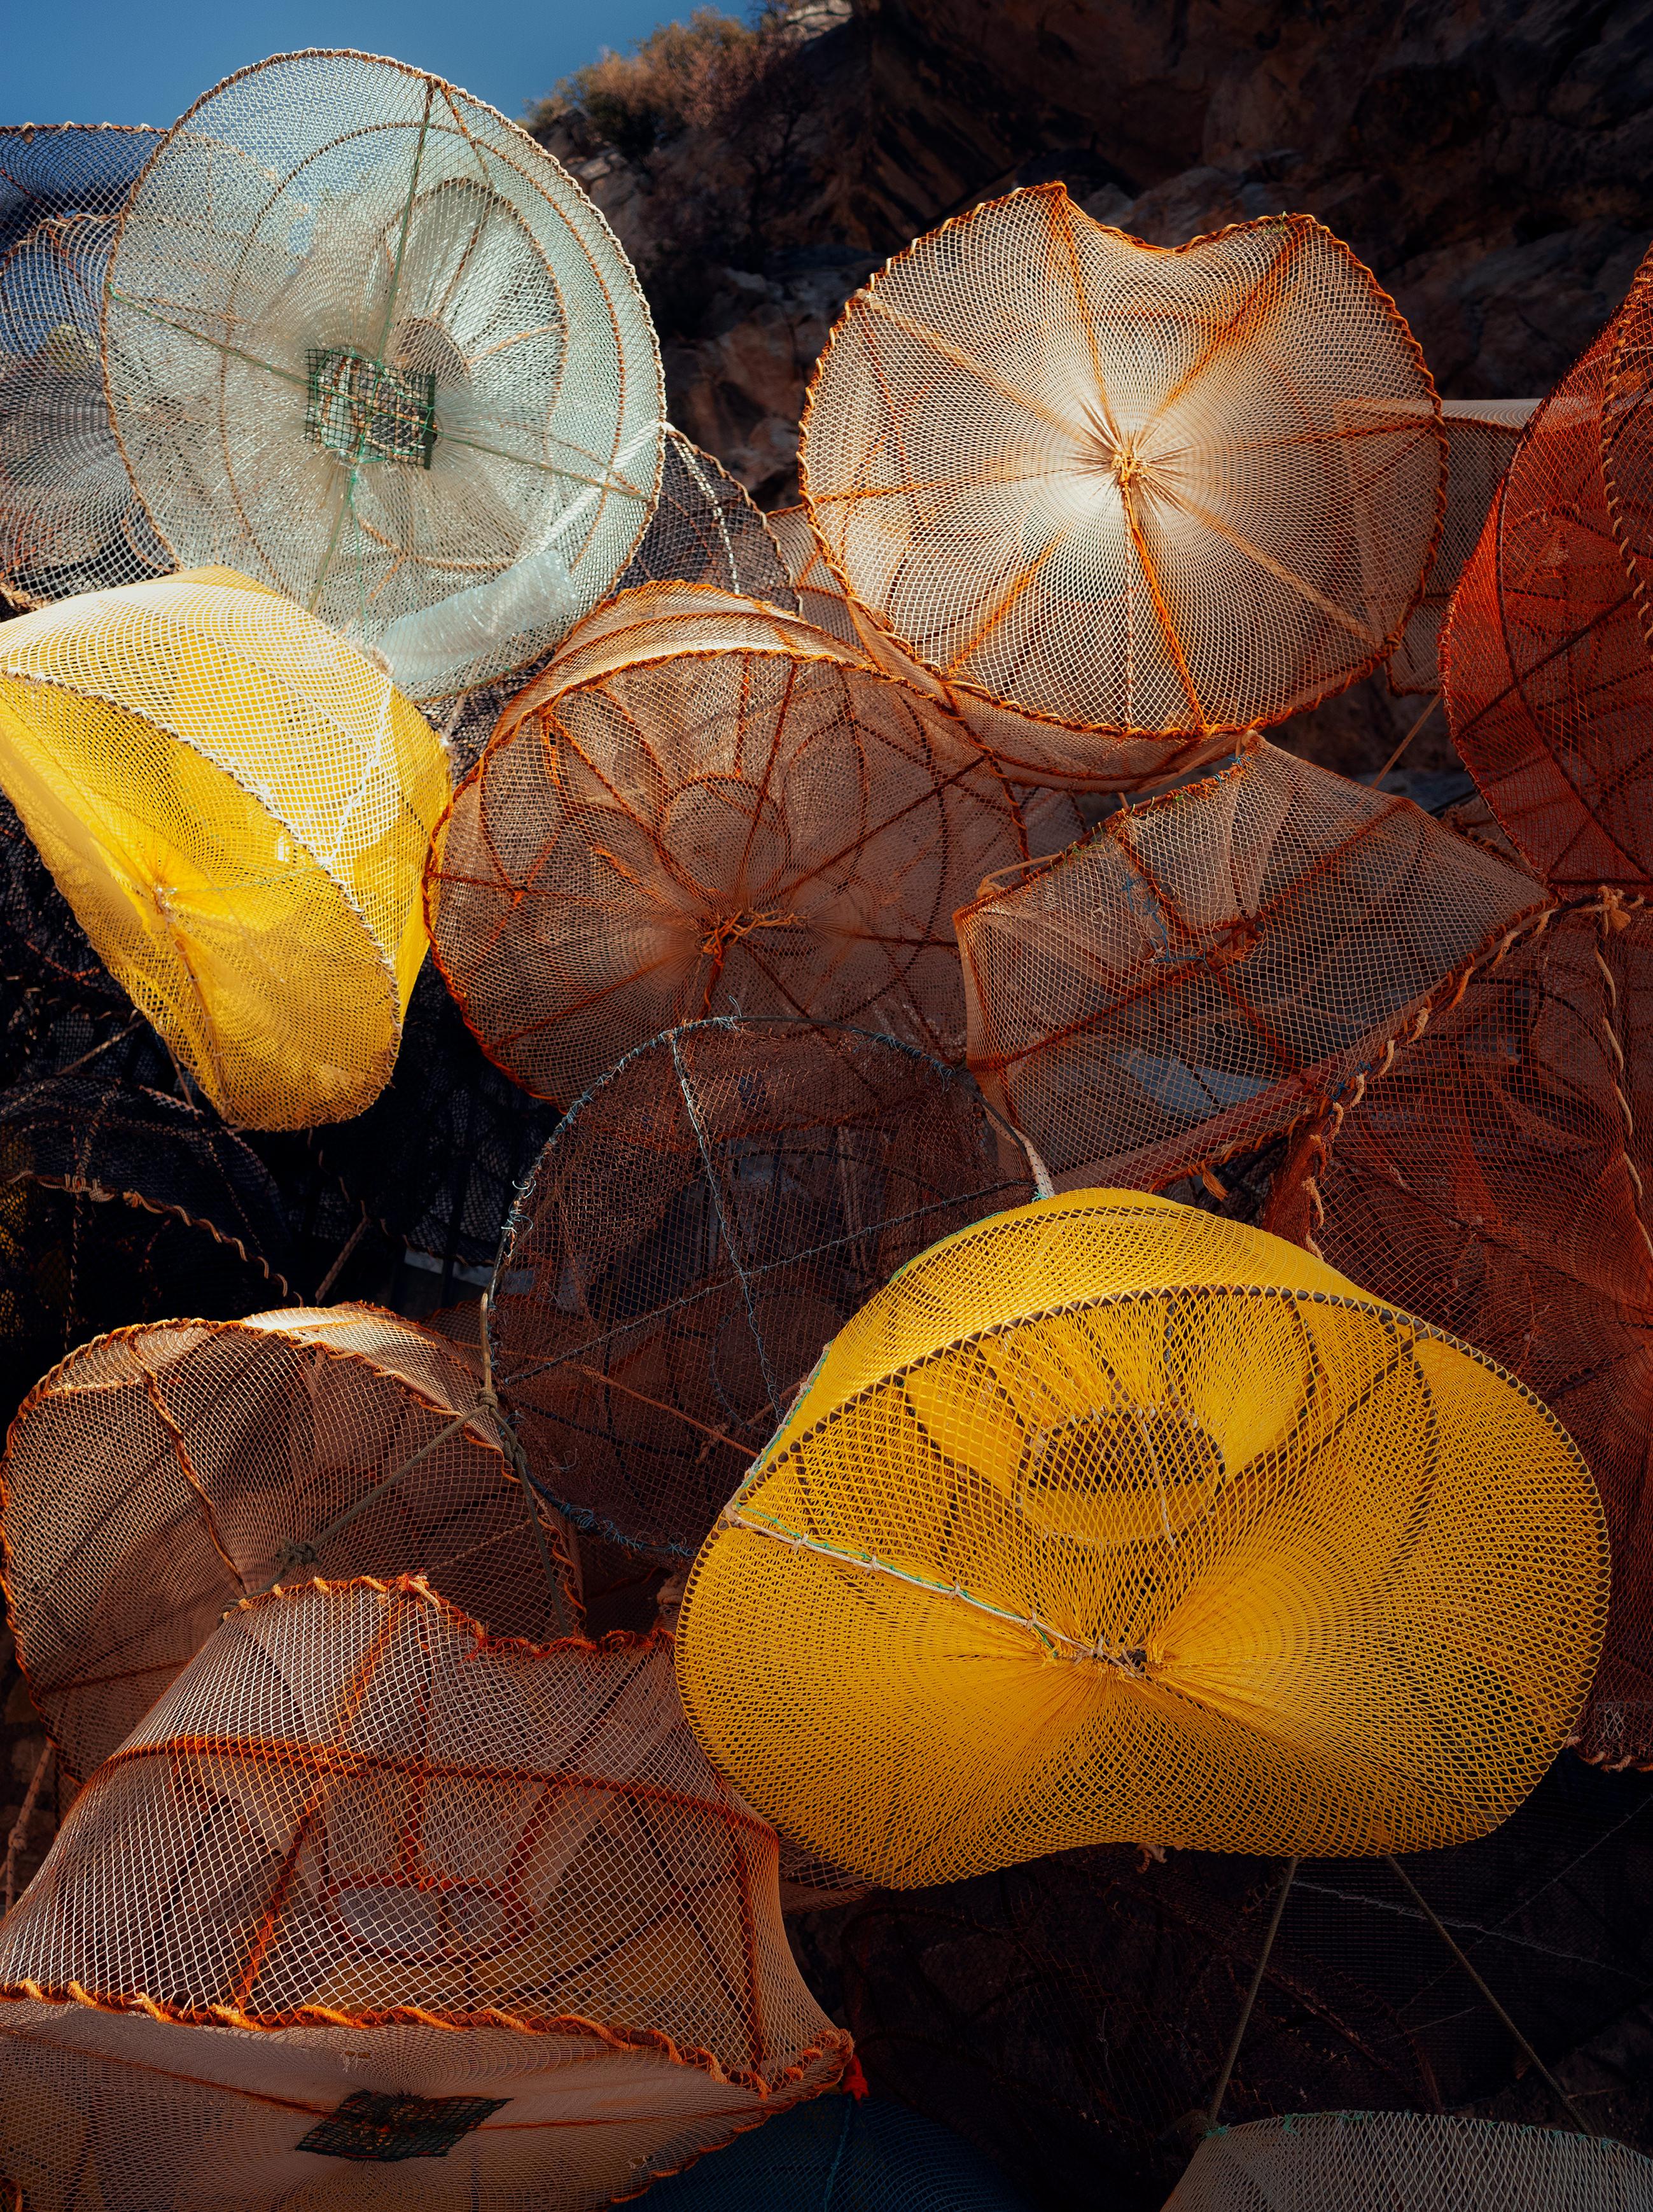 Color Photograph Ugne Pouwell - Nets de pêche n°3 - filets de pêche colorés en Italie, édition limitée 20